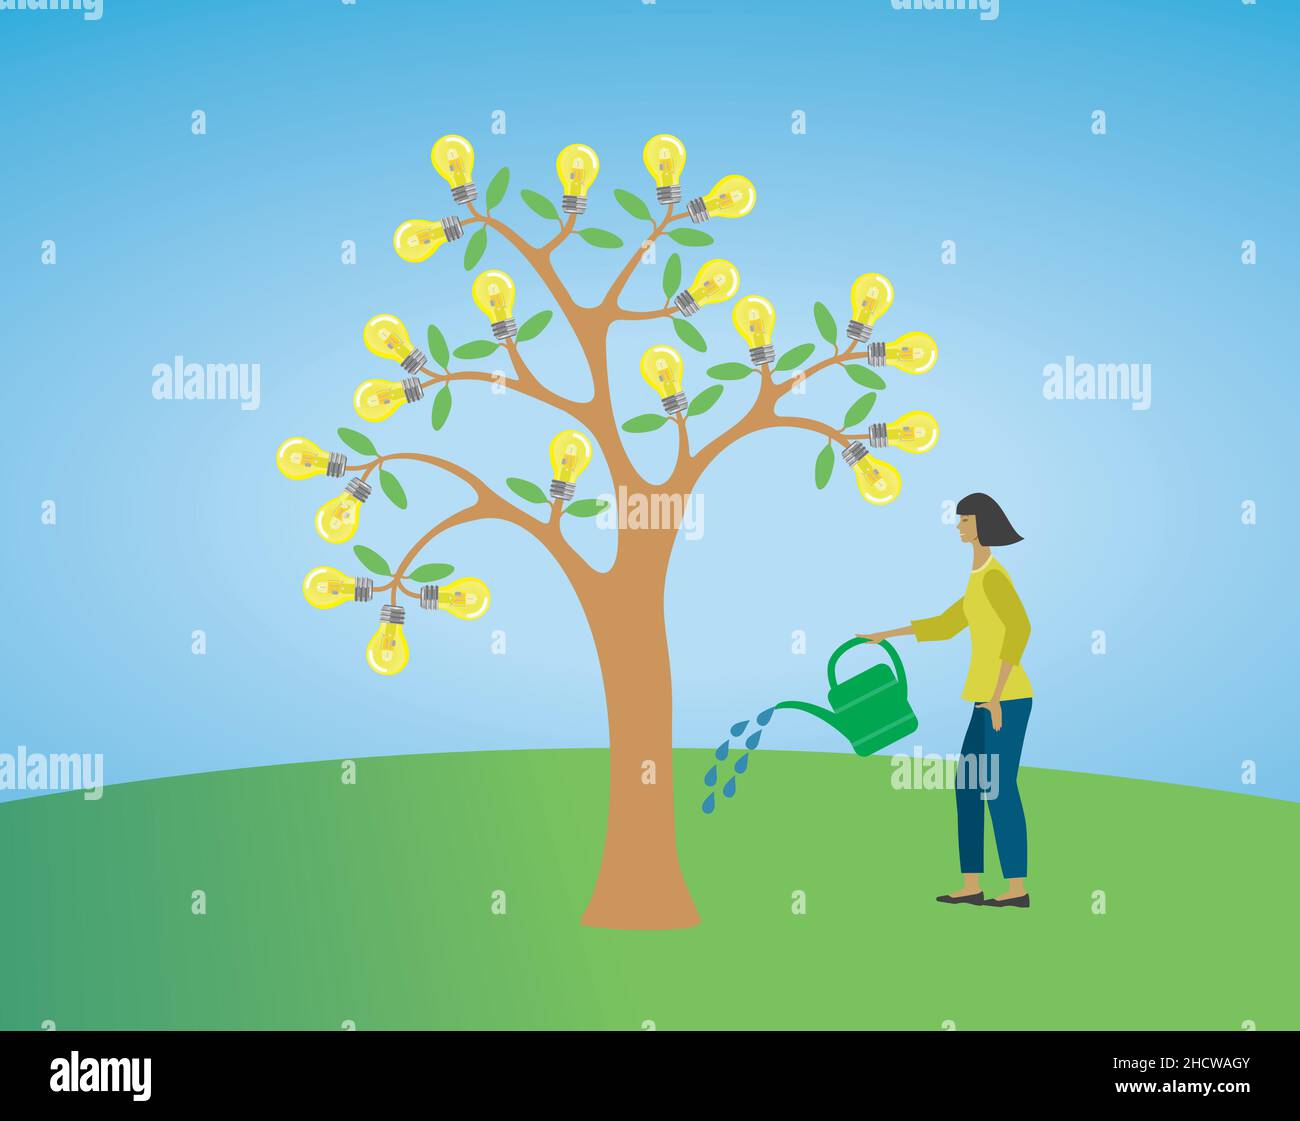 Frau, die Baum wässert, um Glühbirnen zu verbessern, die auf dem Baum wachsen. Vektorgrafik. EPS10. Stock Vektor